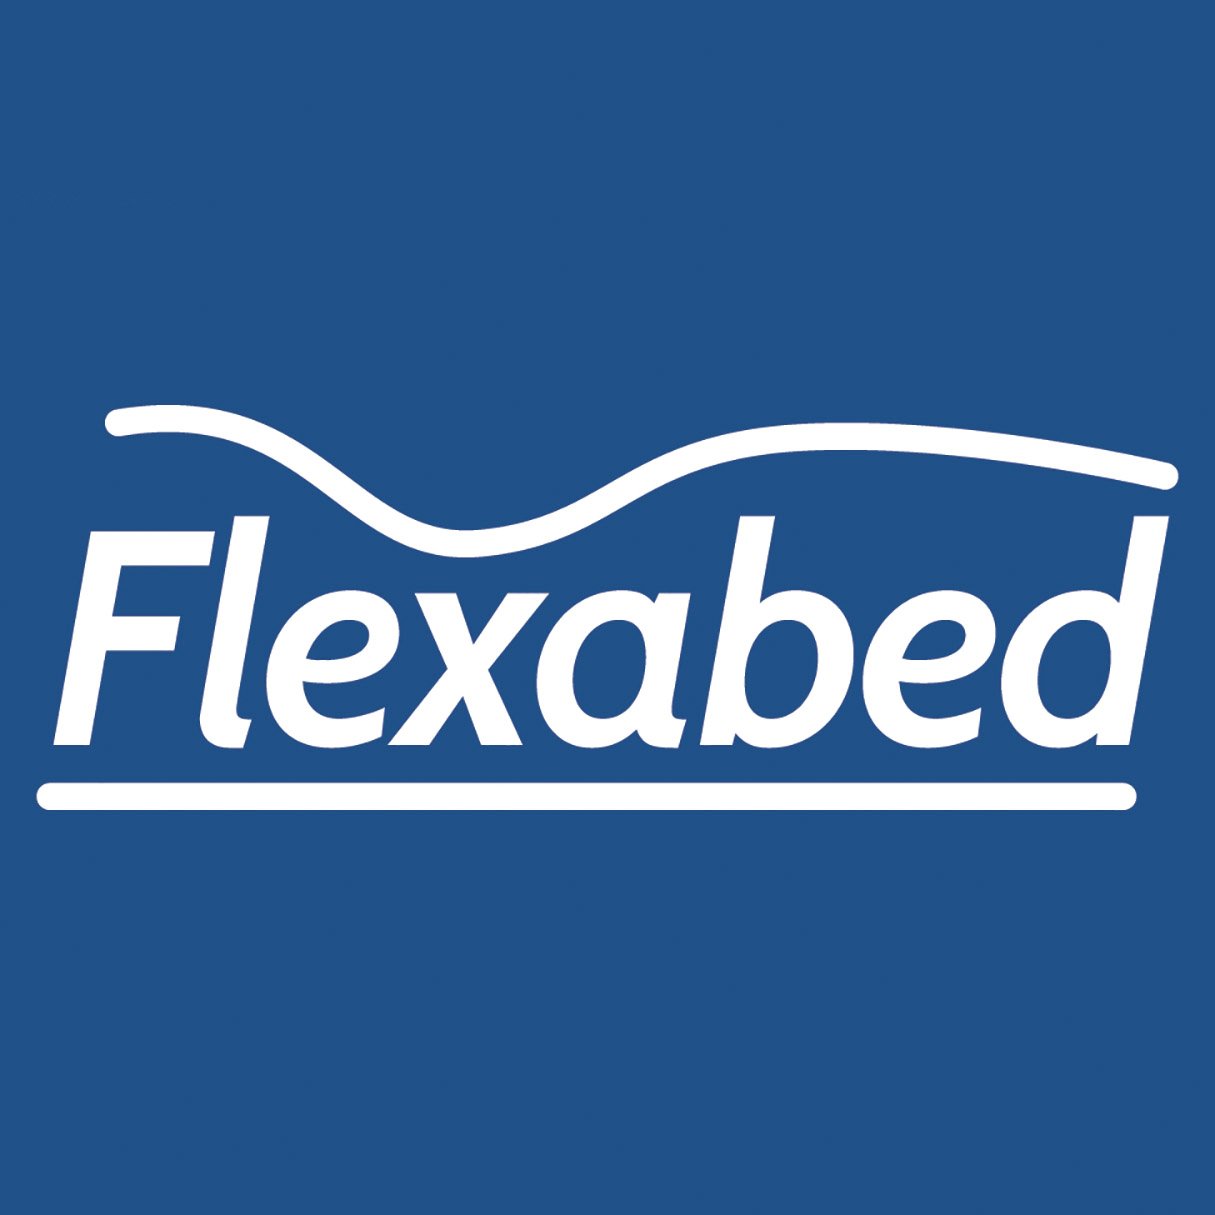 flexabed.com